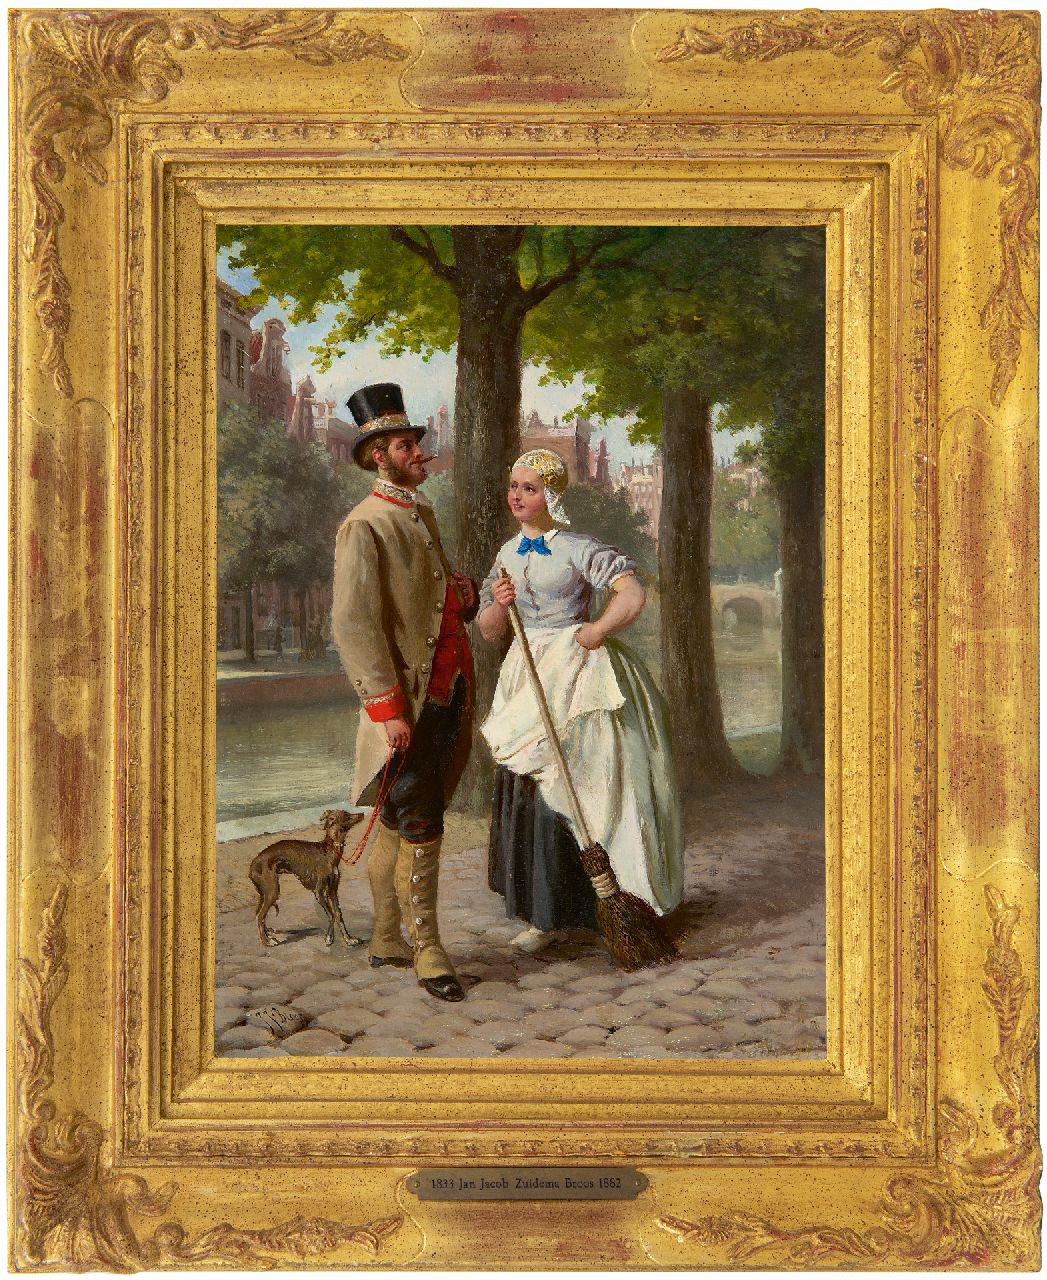 Zuidema Broos J.J.  | Jan Jacob Zuidema Broos | Schilderijen te koop aangeboden | Romance op de gracht, Amsterdam, olieverf op paneel 29,0 x 21,0 cm, gesigneerd linksonder